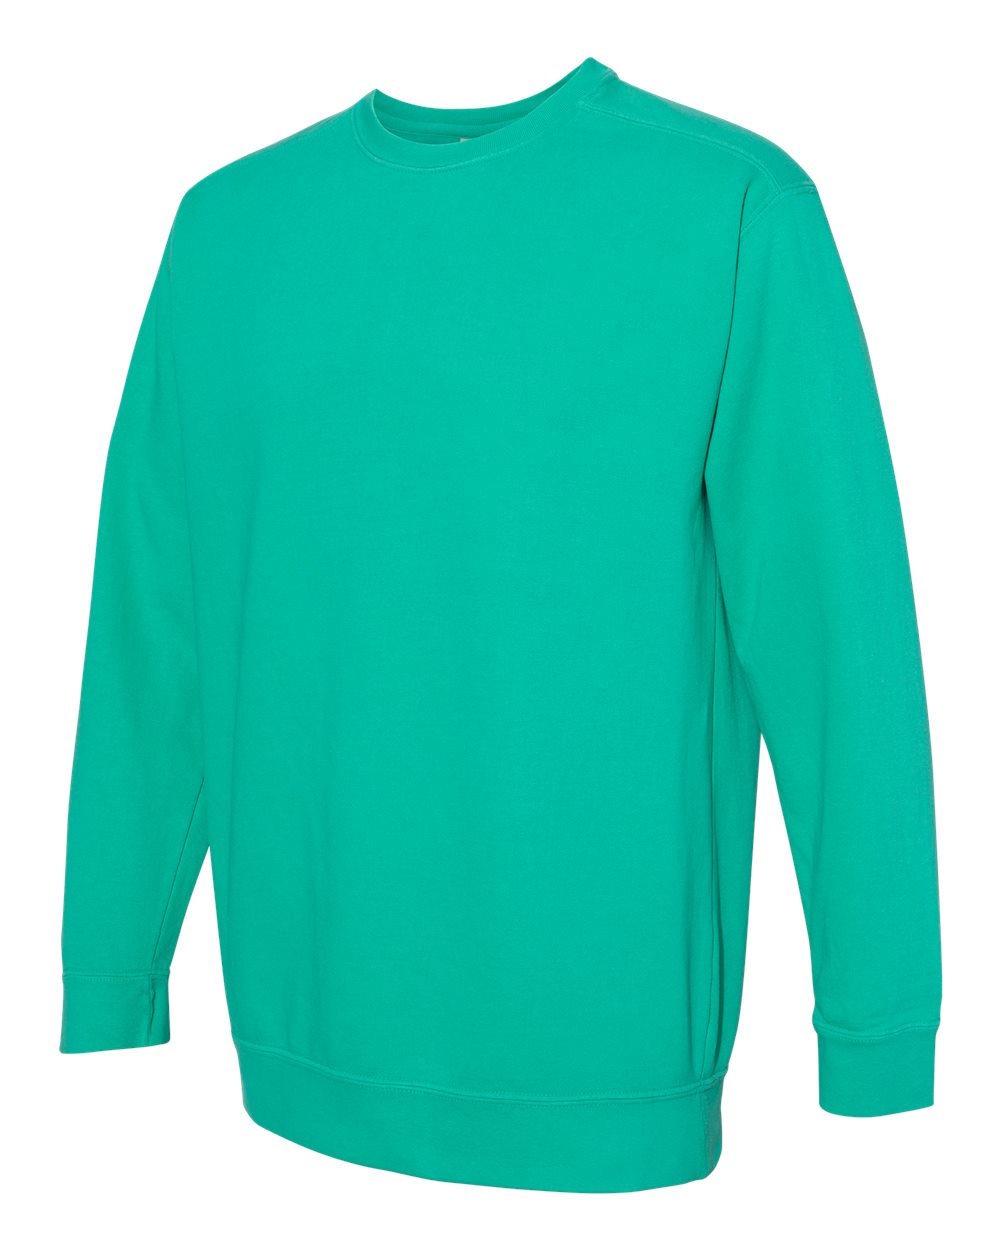 Middle Island Sweatshirt, Comfort Colors® Brand Hooded Sweatshirt